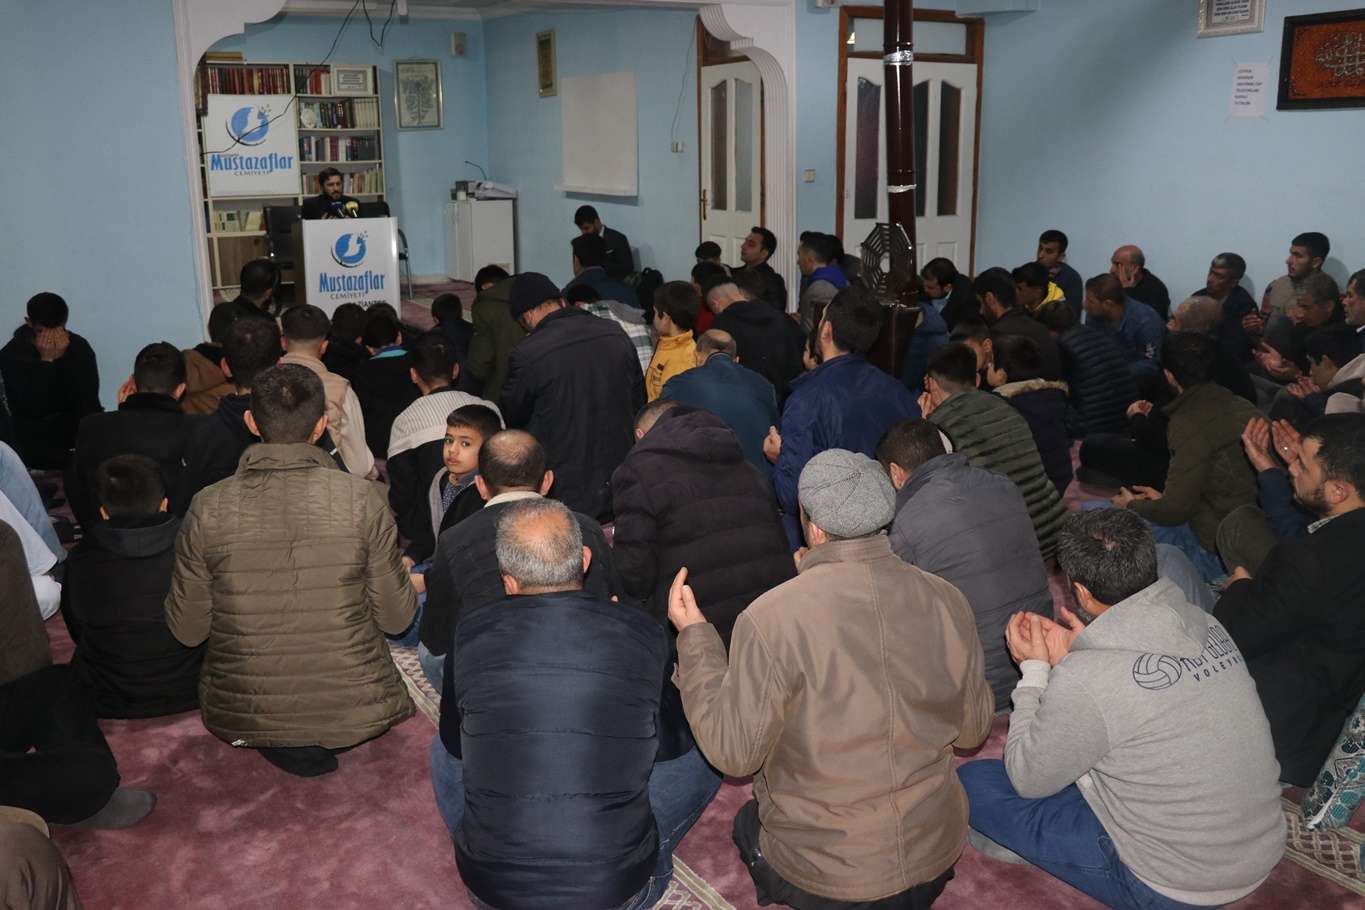 Gaziantep'te 'Dünya Mustazaflar Haftası' programı düzenlendi